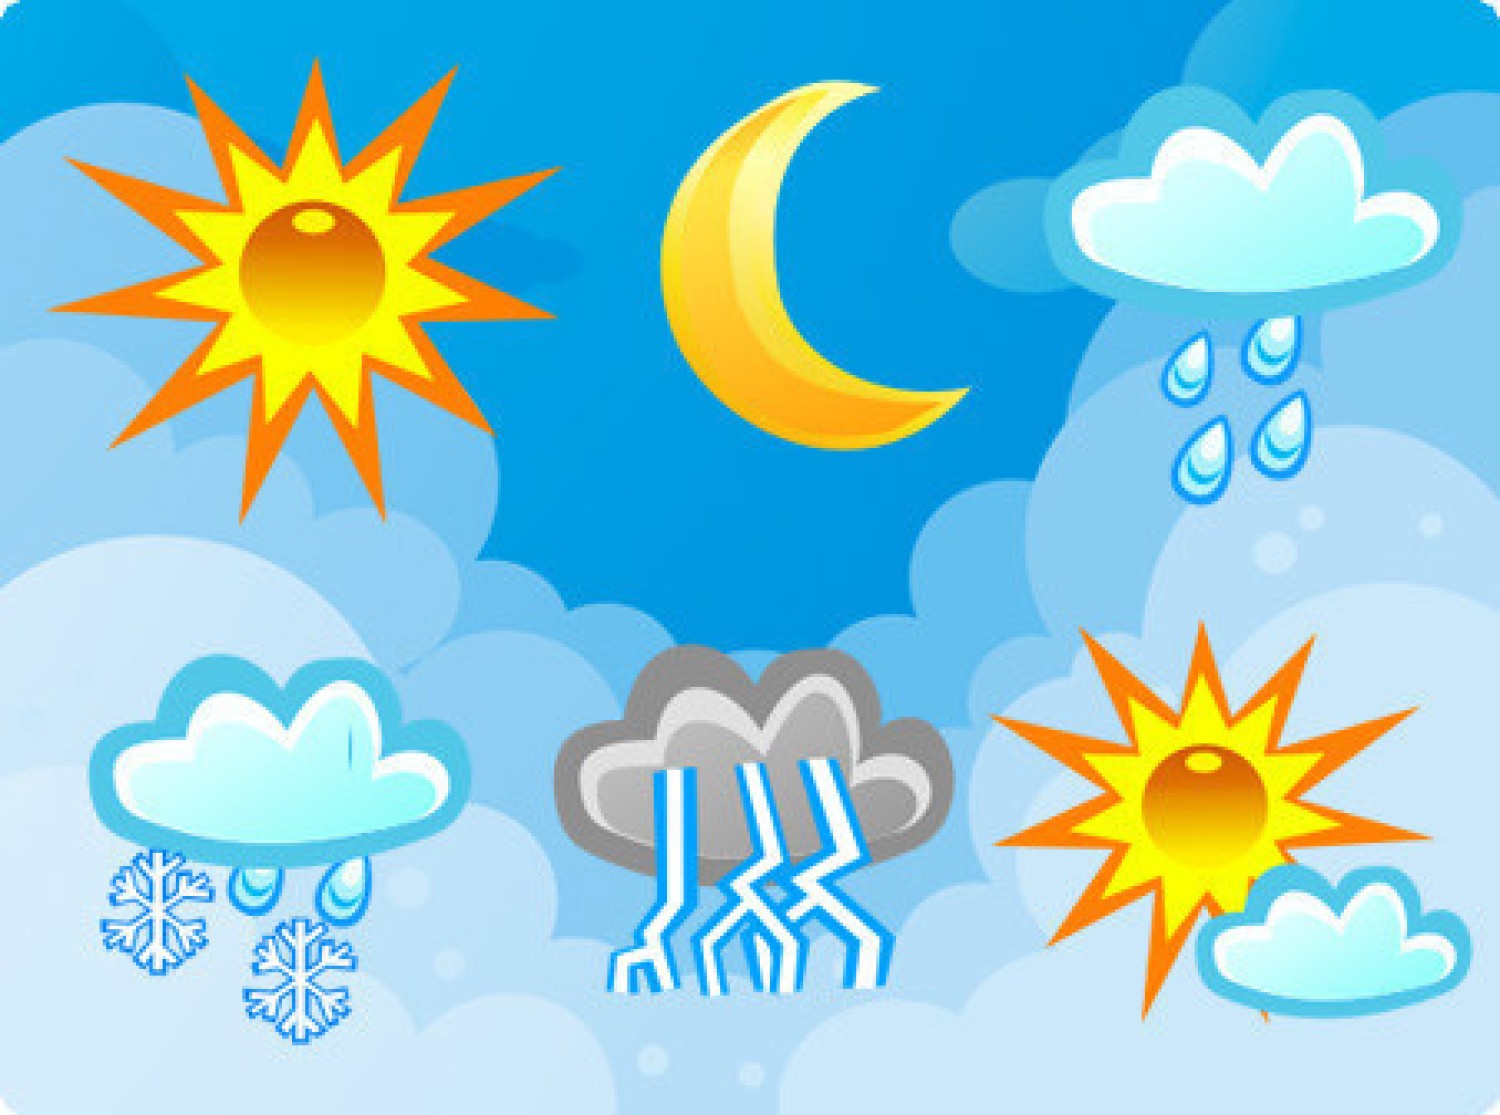 pogoda-toru-kujawy-sprawd-prognoz-pogody-na-dzi-i-jutro-16-05